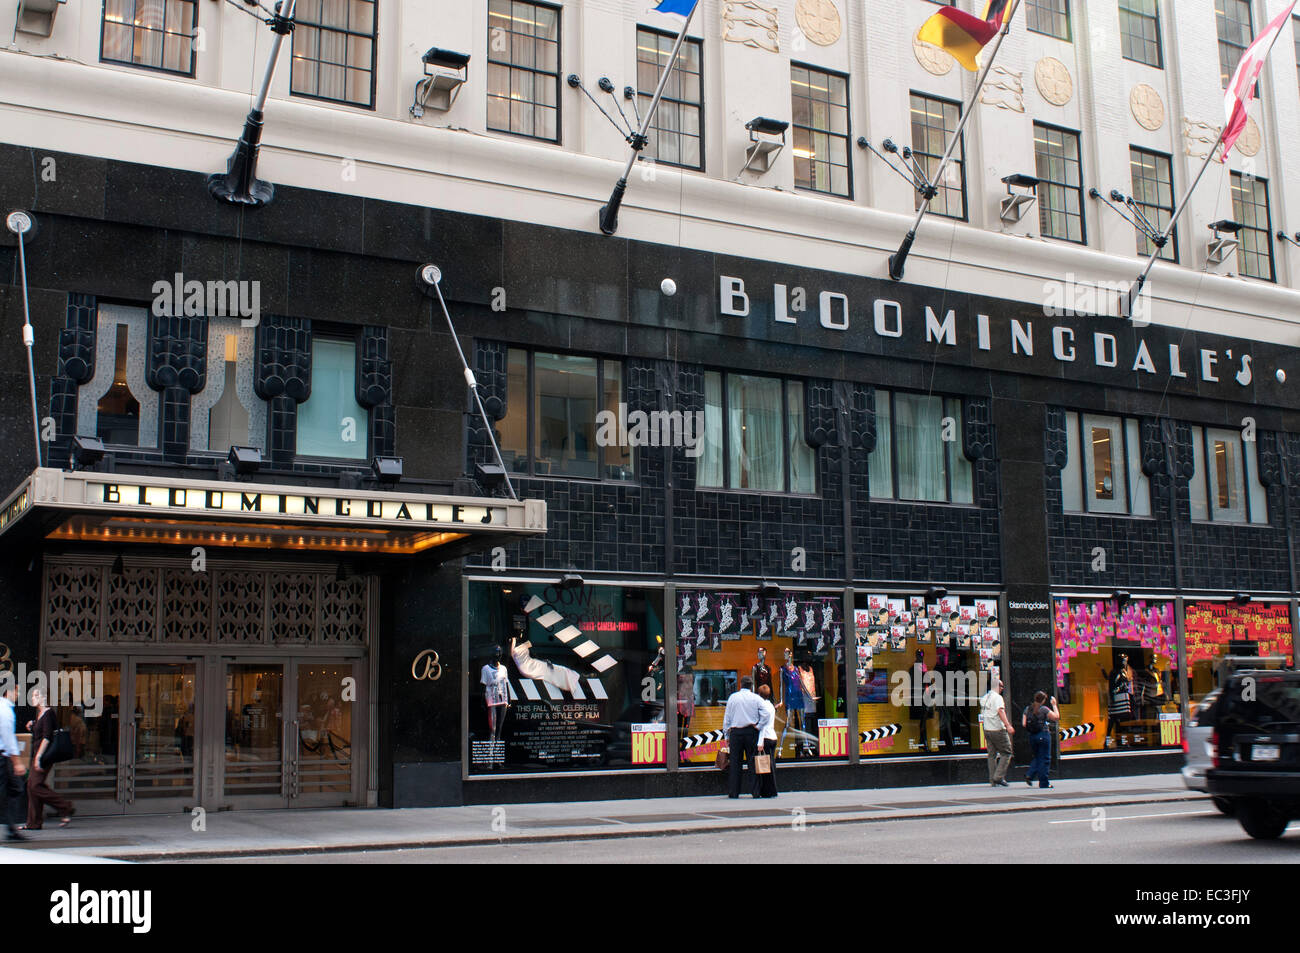 Los compradores pasan por Bloomingdale s department store en Manhattan, Nueva York, EE.UU. Almacenes Bloomingdale's. 1000 3rd Avenue hasta 59th Str Foto de stock